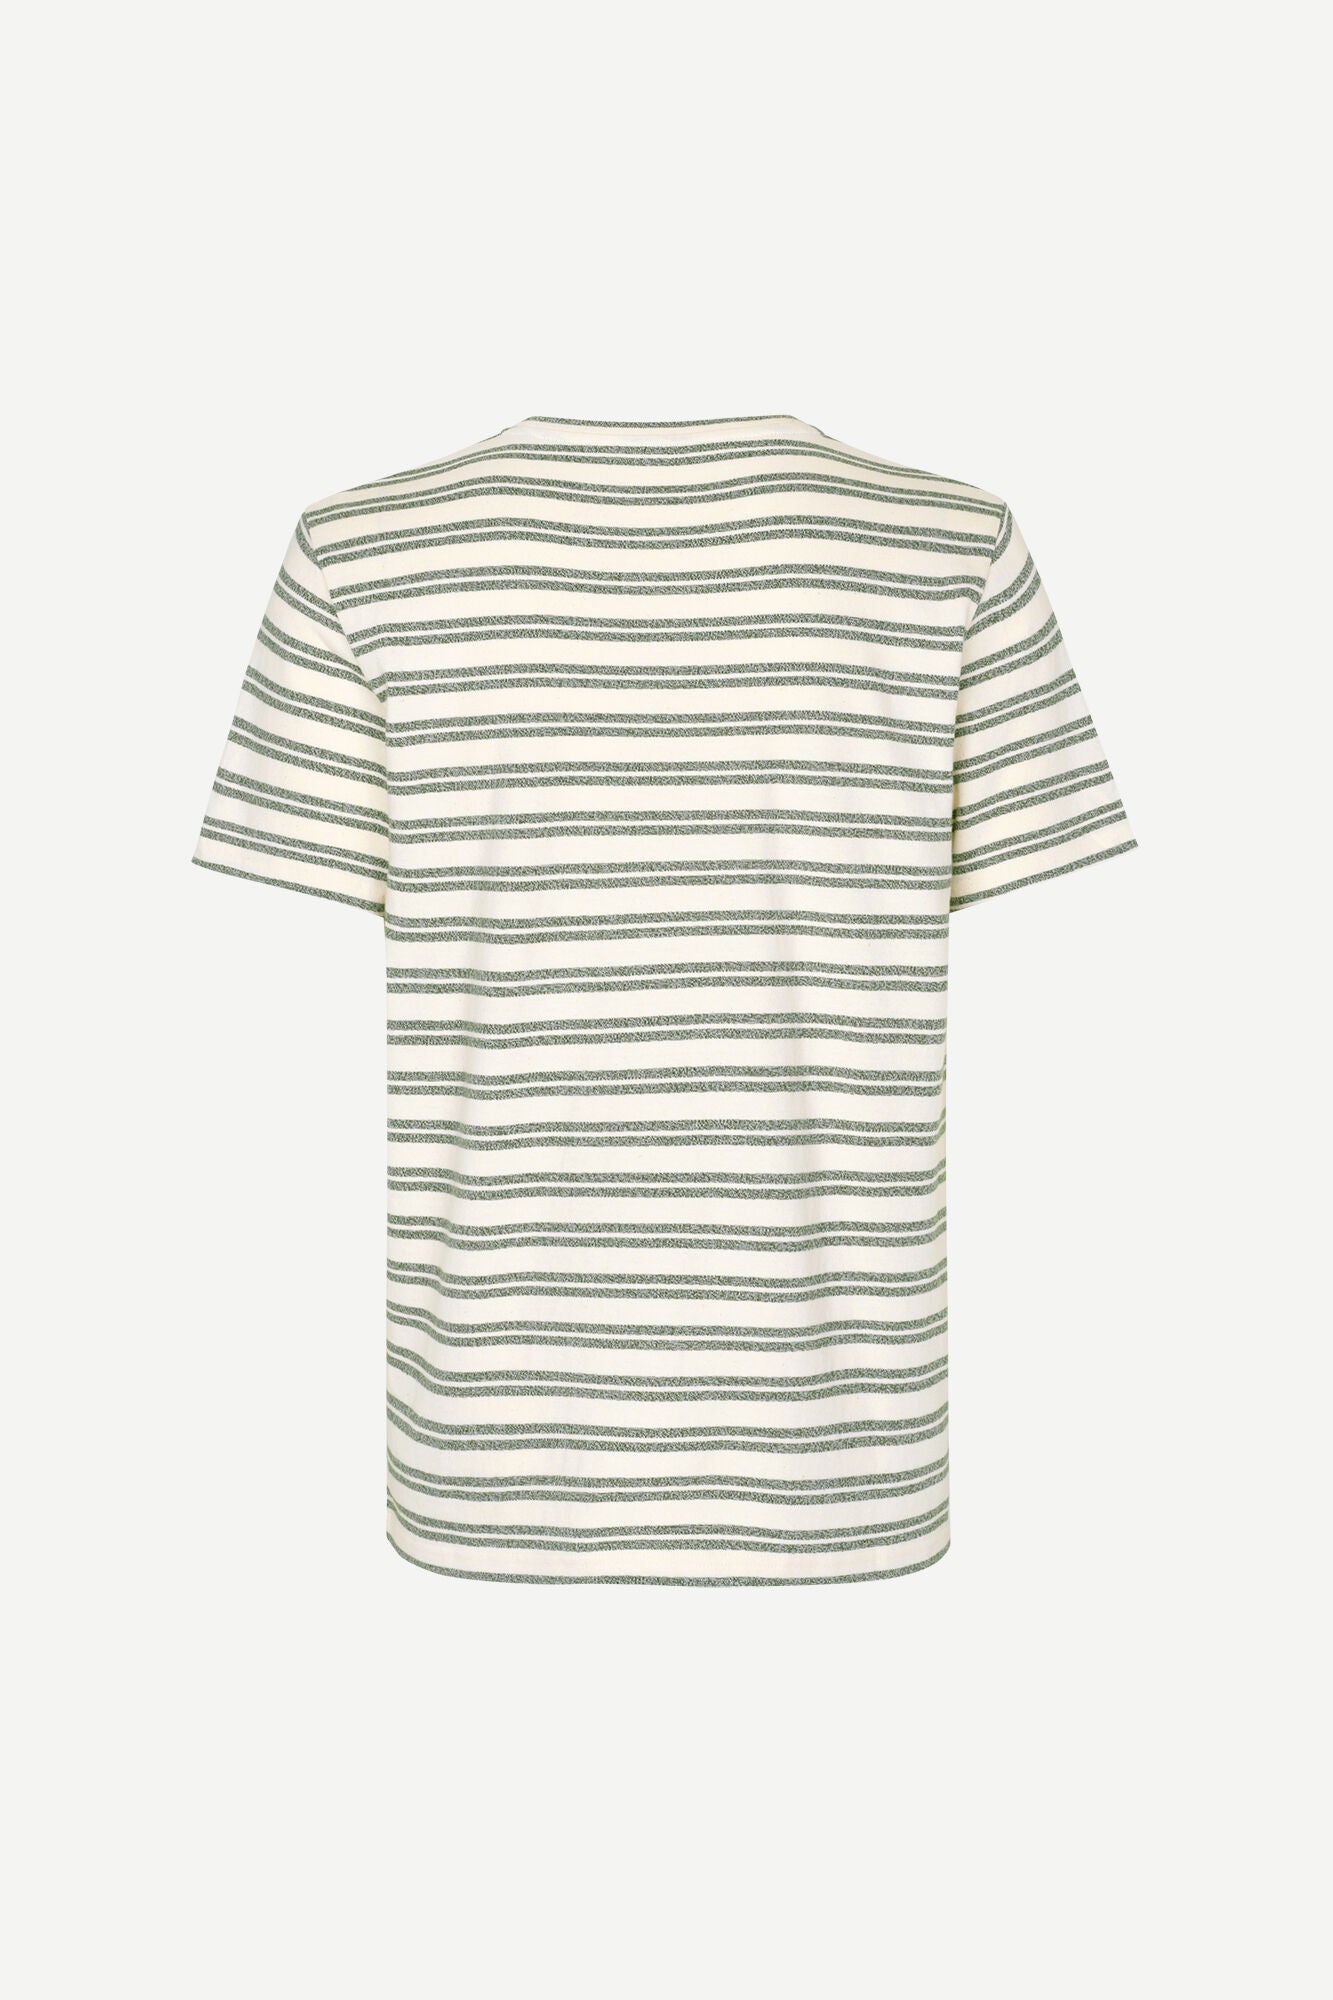 
                  
                    Samsøe Samsøe - Carpo x T-Shirt - Kambu Green Stripe
                  
                